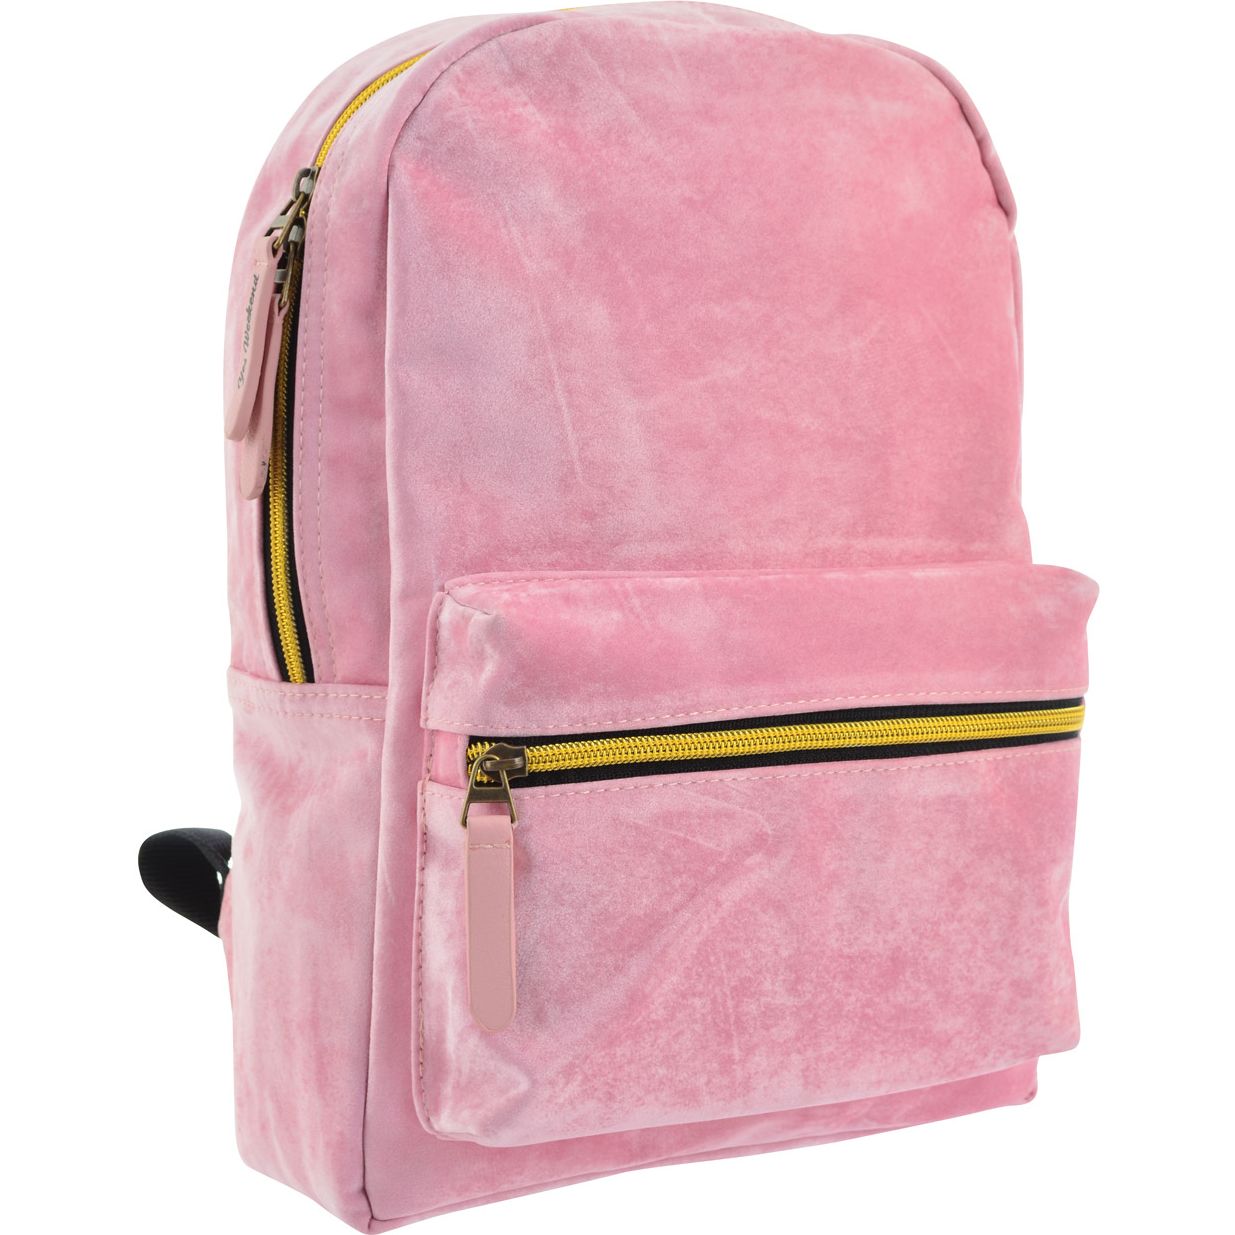 Рюкзак жіночий Yes YW-21 Velour Marlin, розовый (556900) - фото 2